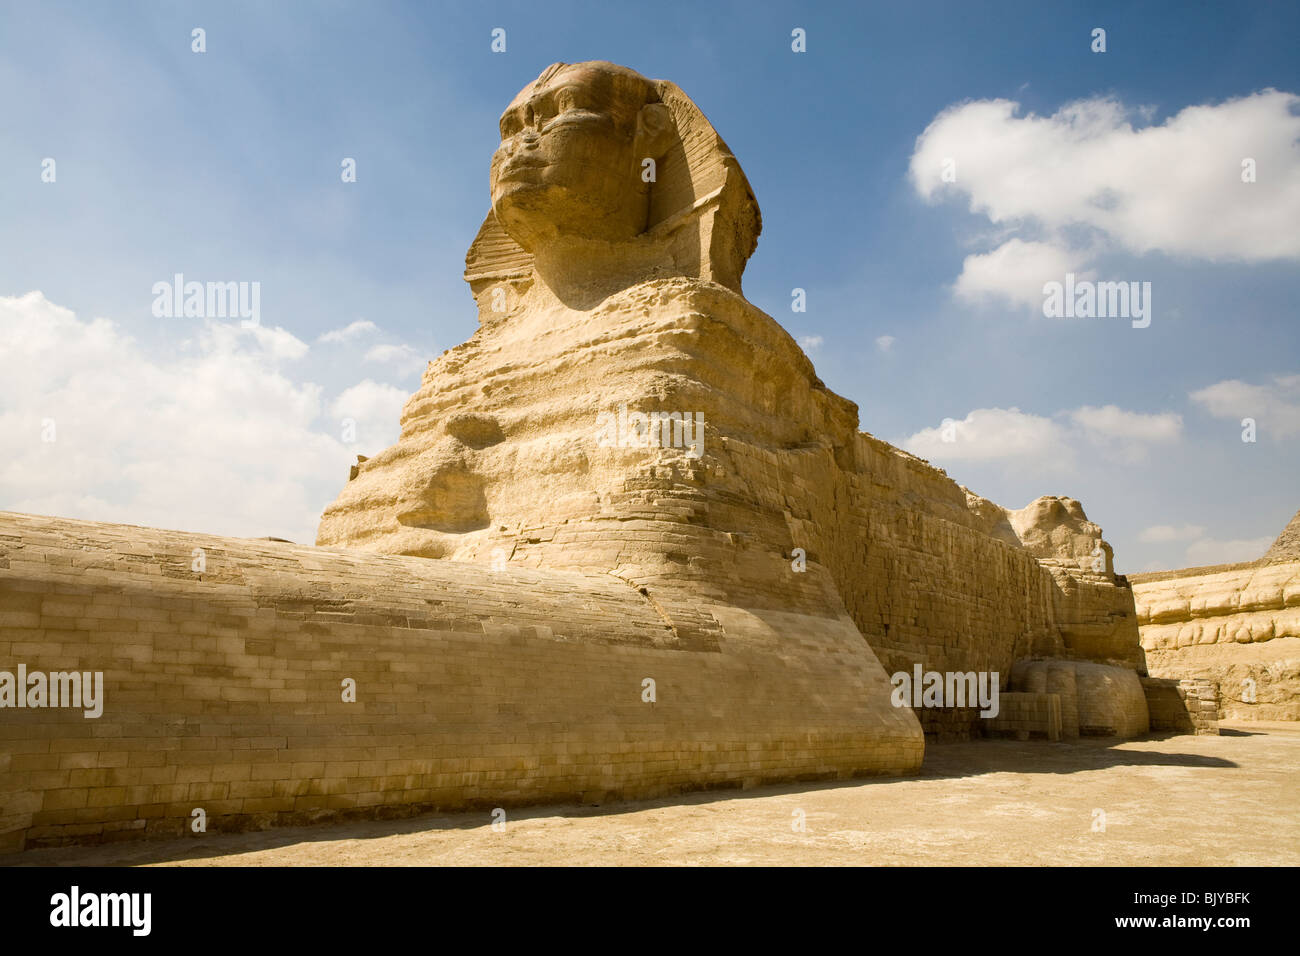 Die große Sphinx von Gizeh, gesehen aus dem Sphinx-Gehäuse mit Pyramide des Cheops im Hintergrund, Kairo, Ägypten Stockfoto